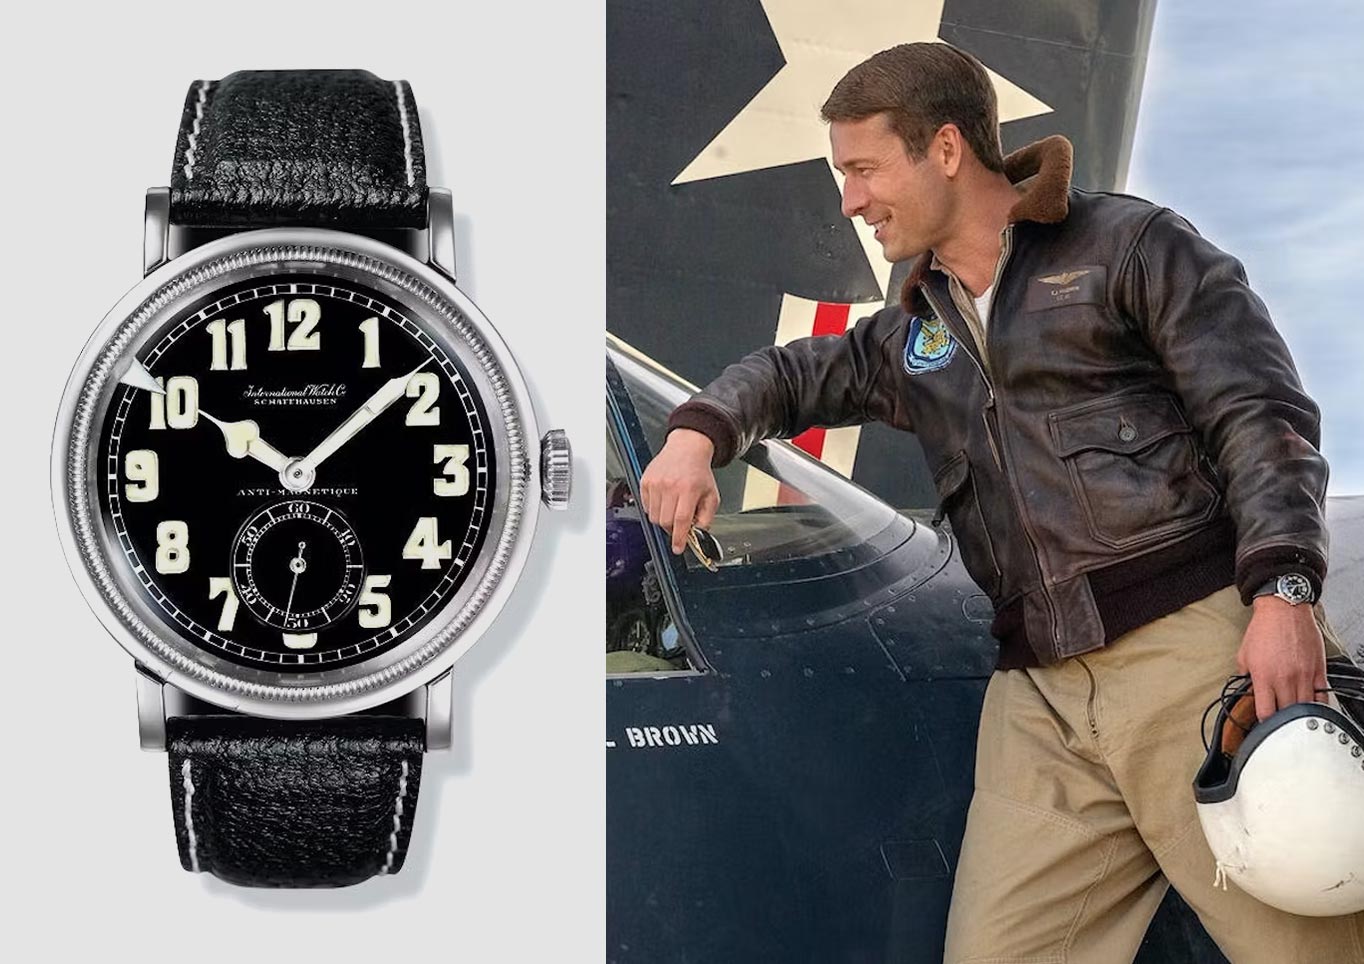 In Devotion, Glen Powell is wearing the Vintage IWC ref. 436 Pilot's Watch